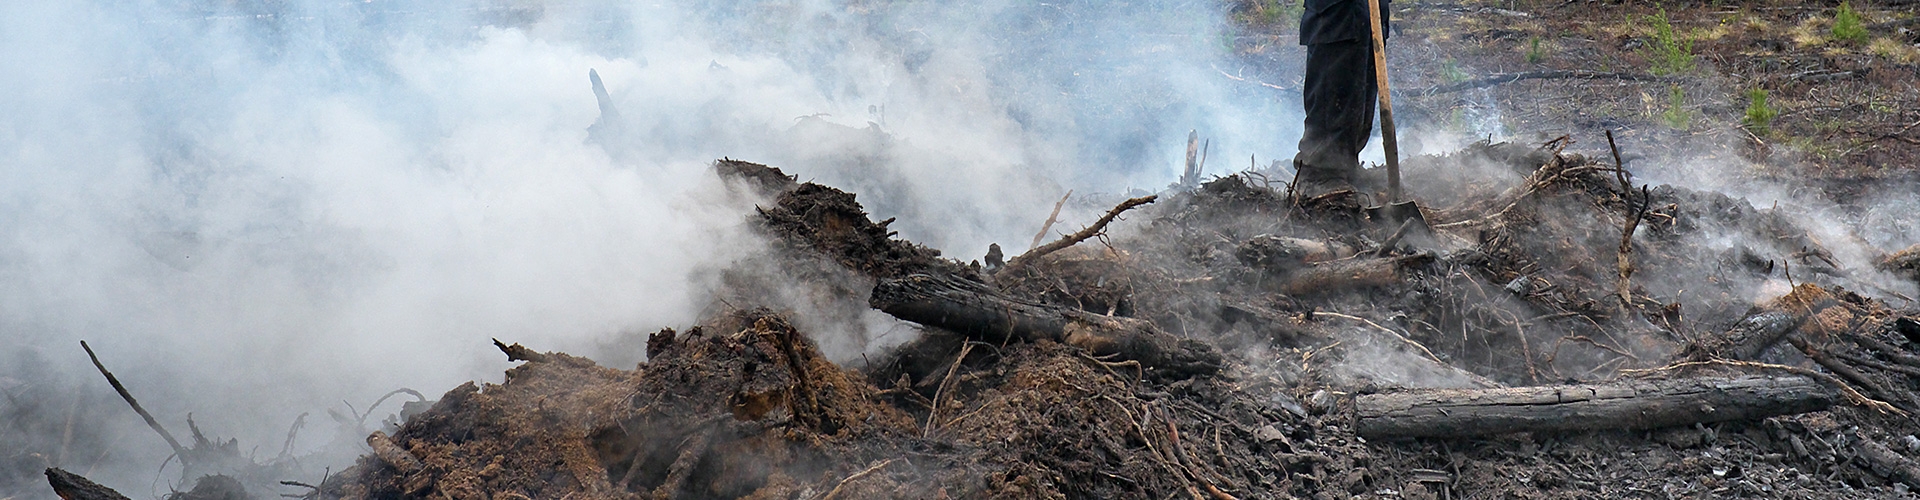 Seguro agrario para protección de incendios forestales - Bombero con pala, parado en campo quemado por un incendio forestal